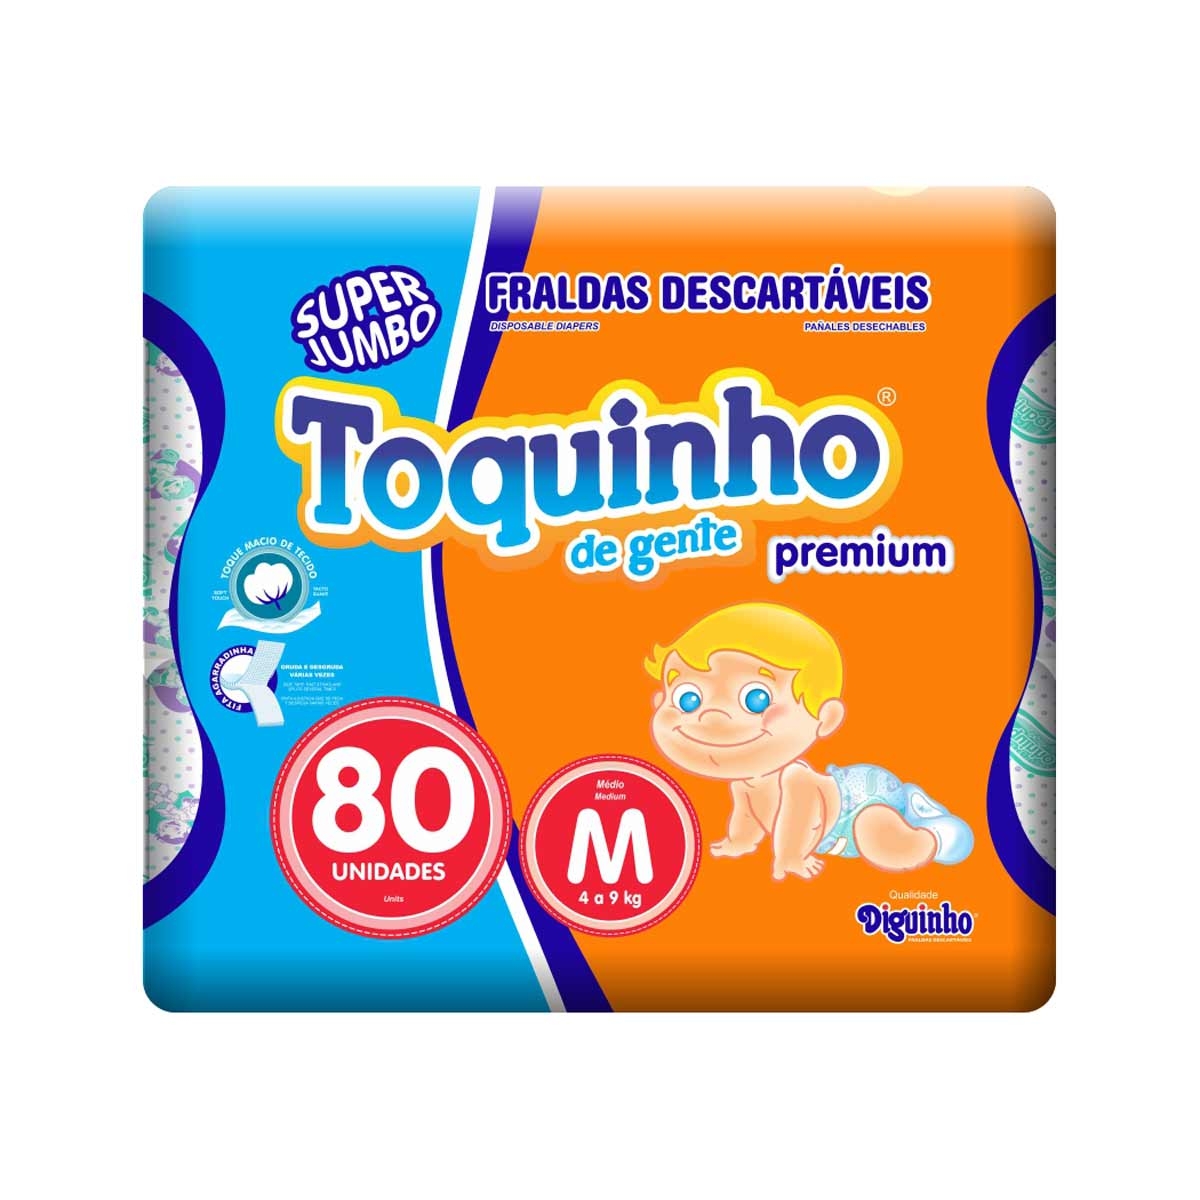 Fralda Toquinho de Gente Premium Tamanho M 80 Tiras